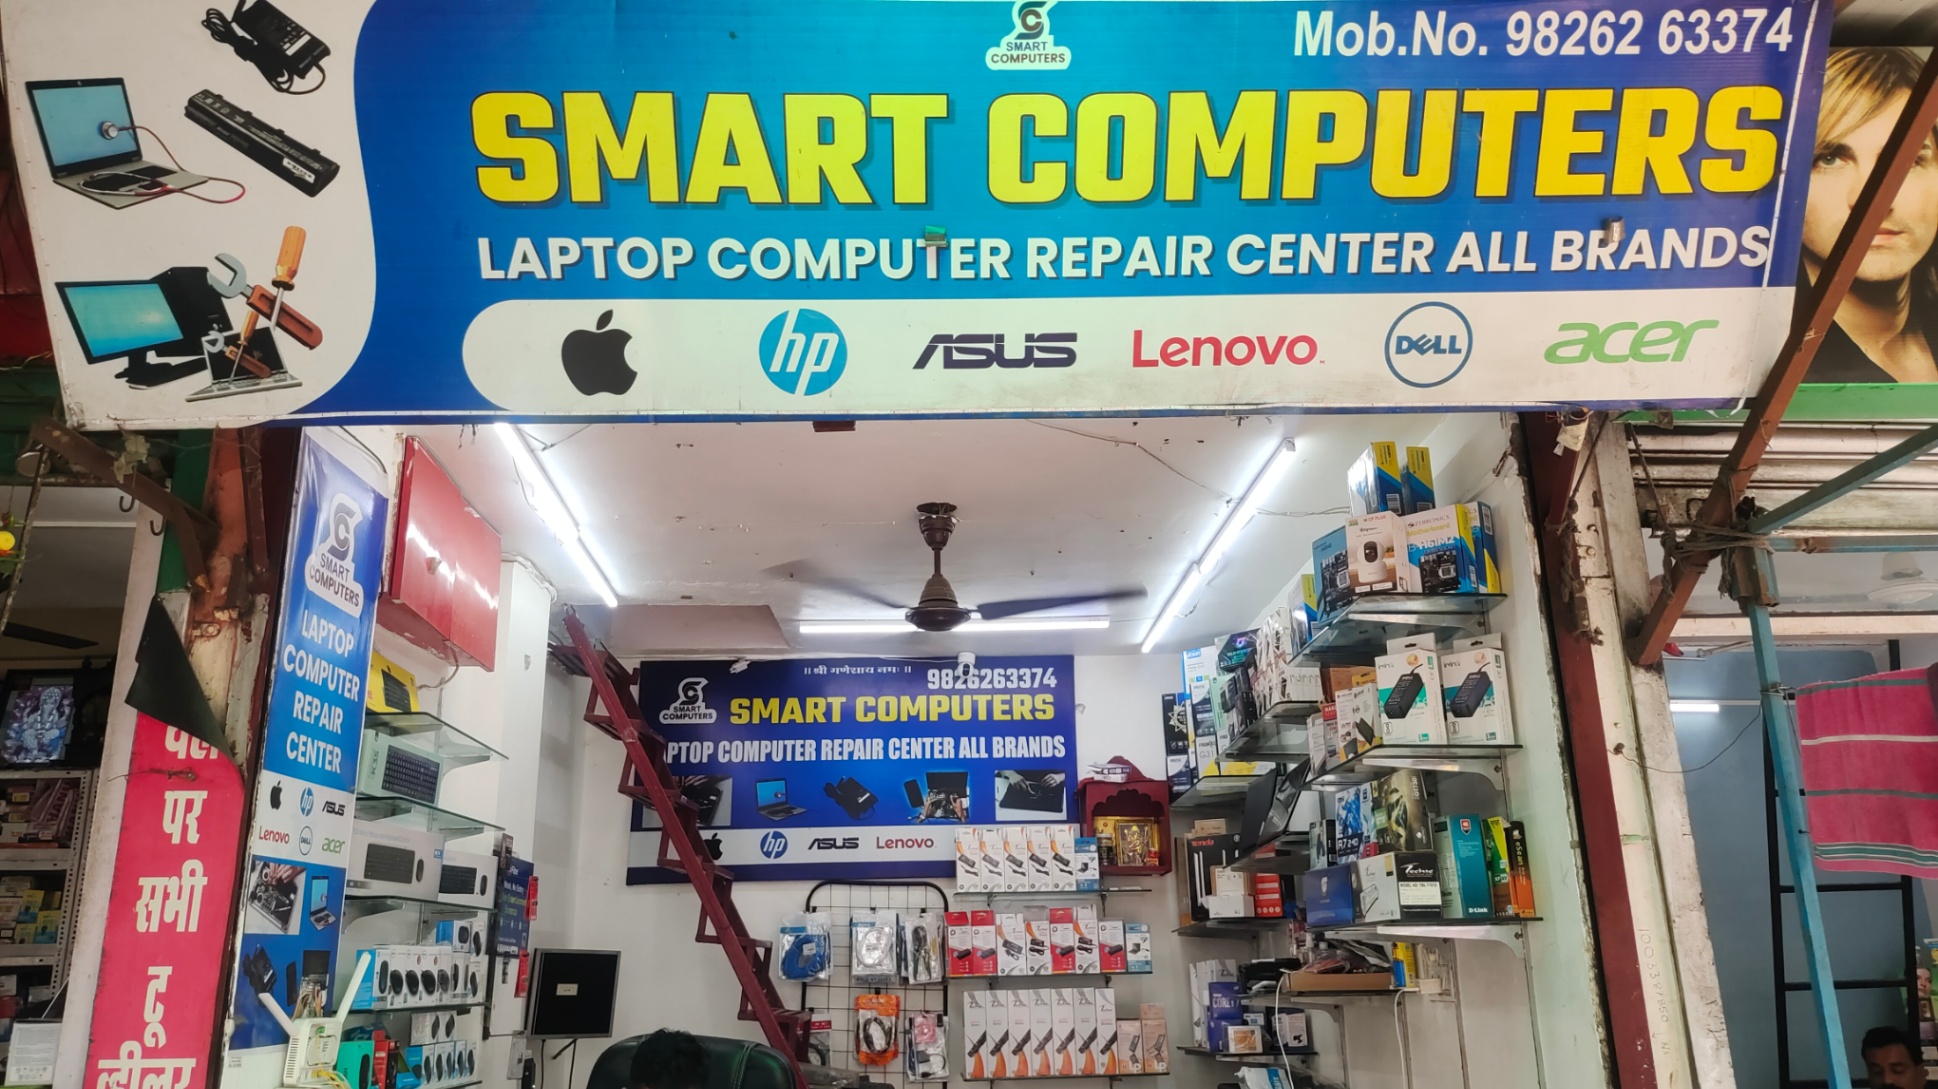 Camera Repair, Mobile/ Computer/ Electronics repair; Exp: More than 15 year